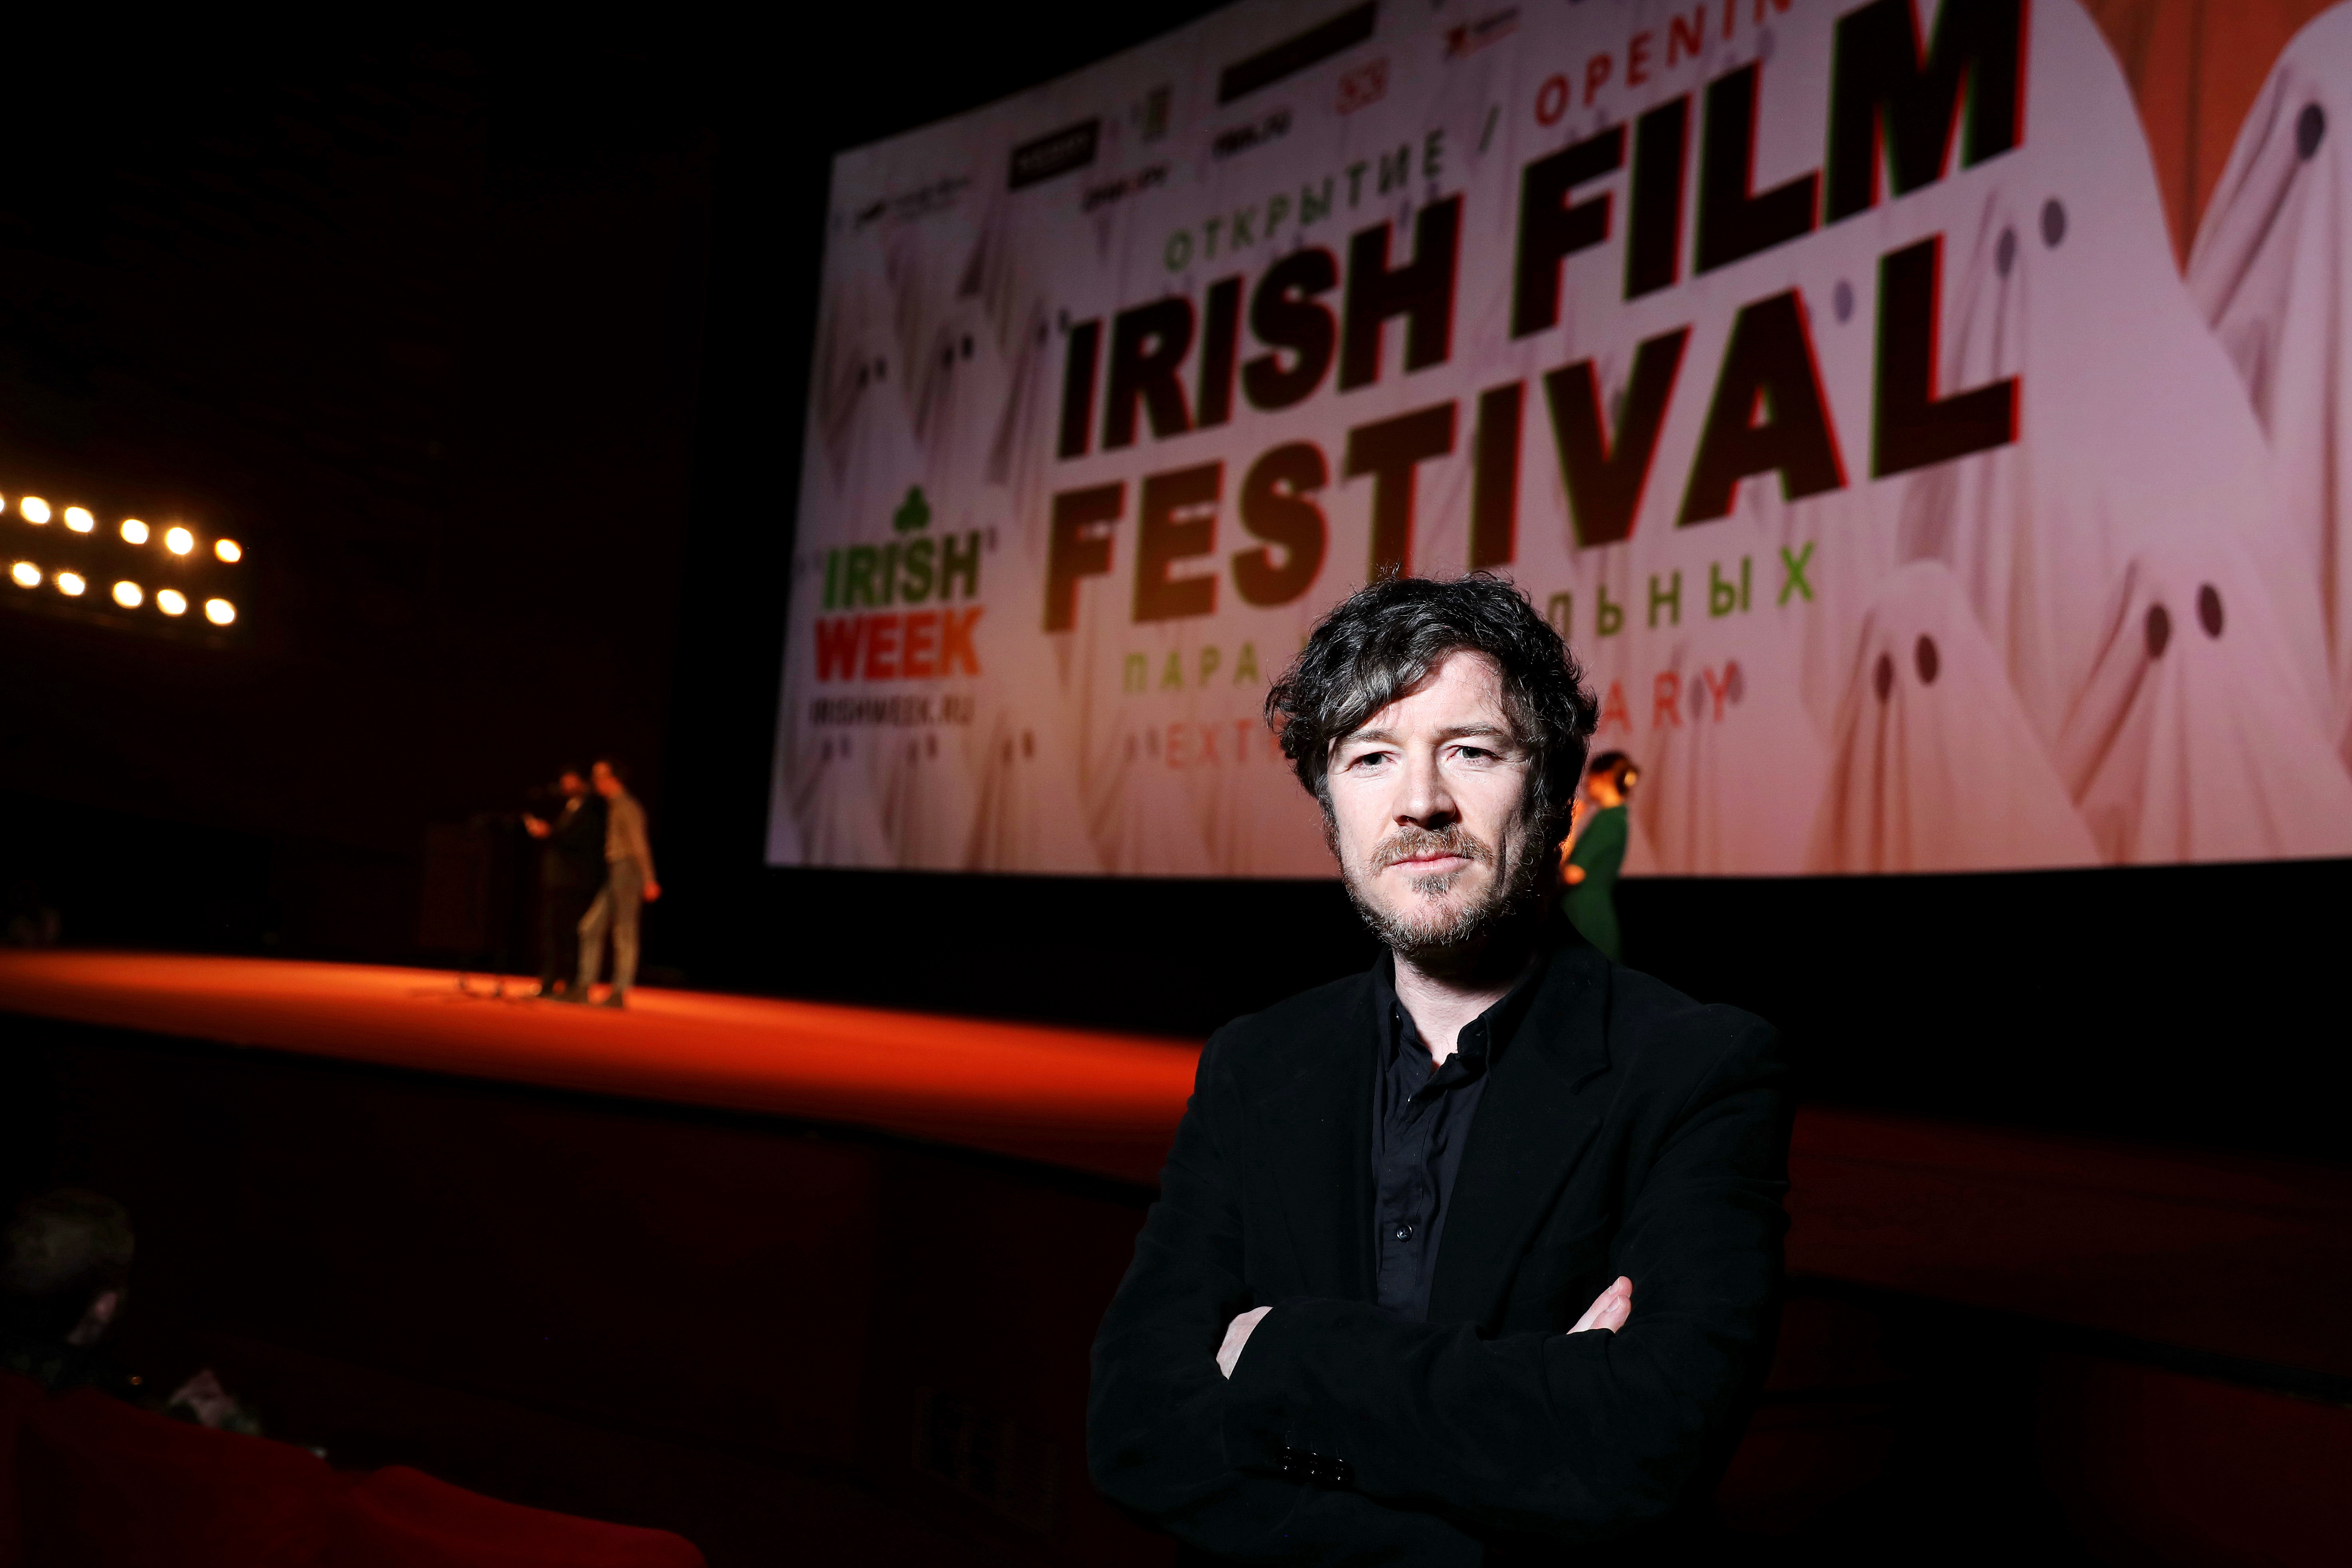 Актер Барри Уорд хотел привезти «зачарованный гравий» на открытие Irish Film Festival